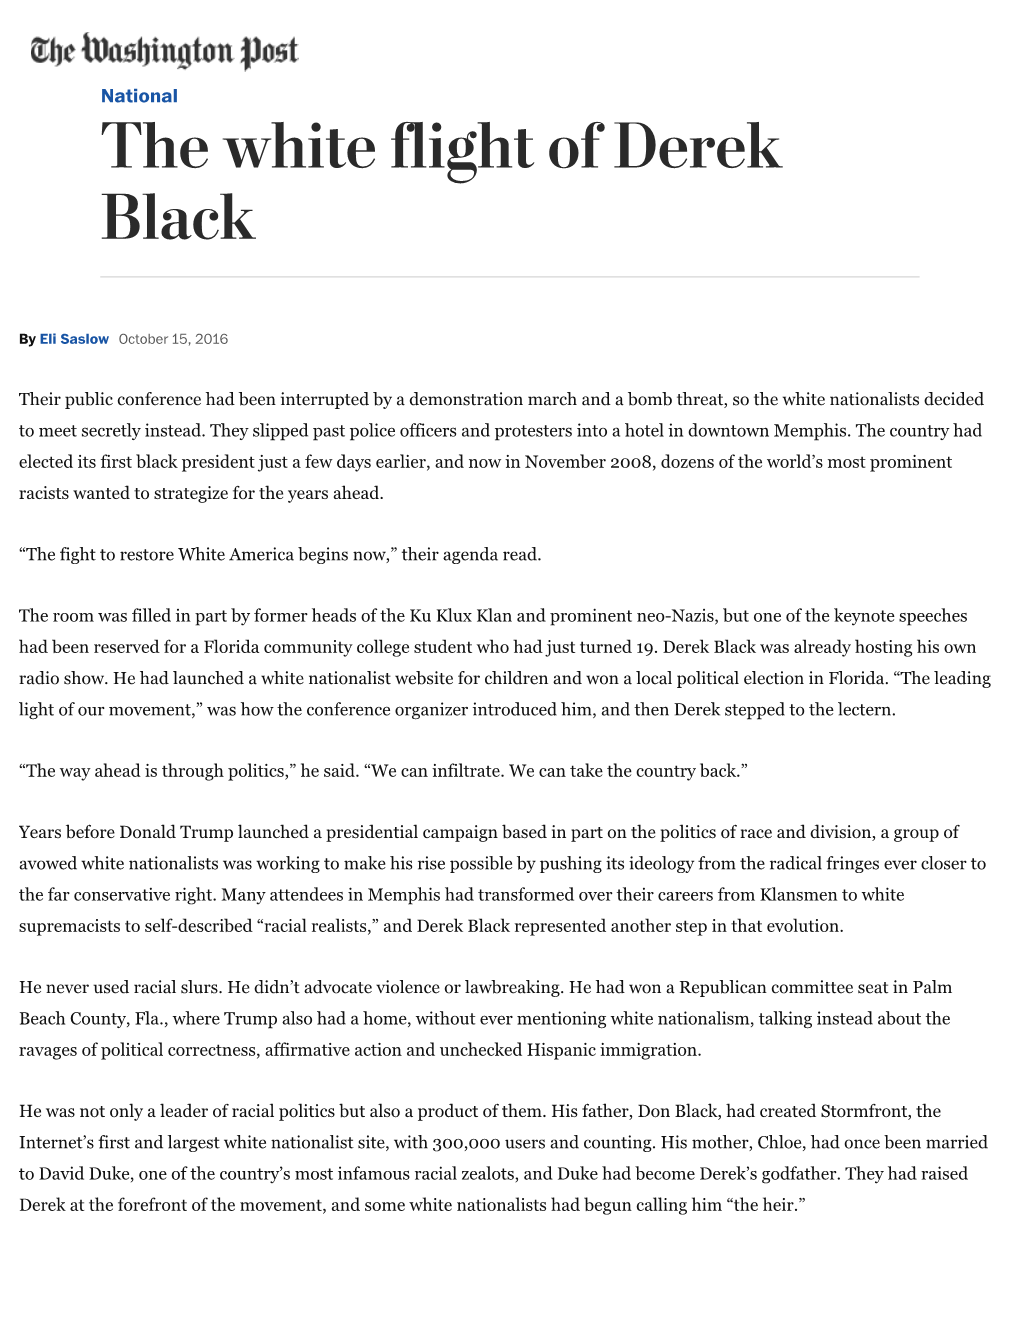 The White Flight of Derek Black